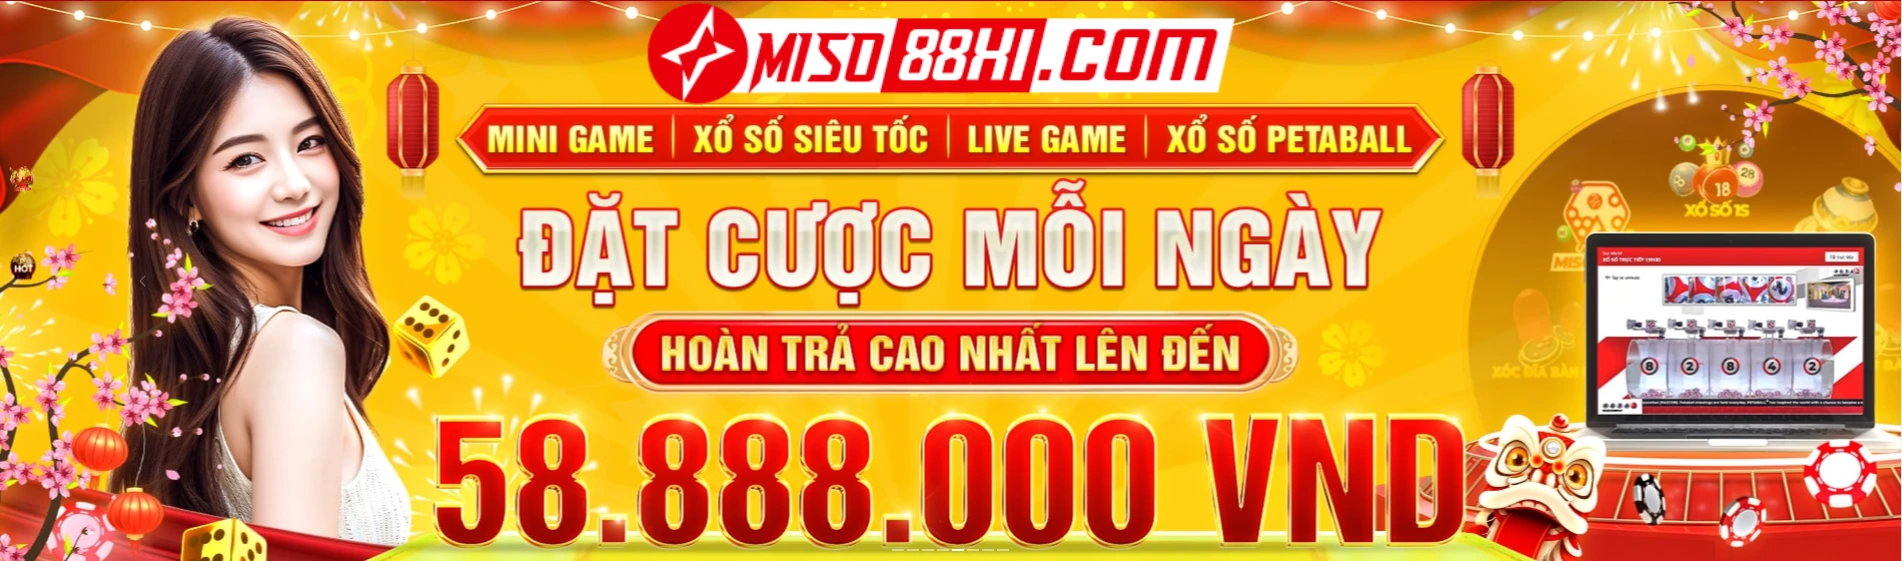 banner miso88xi.com